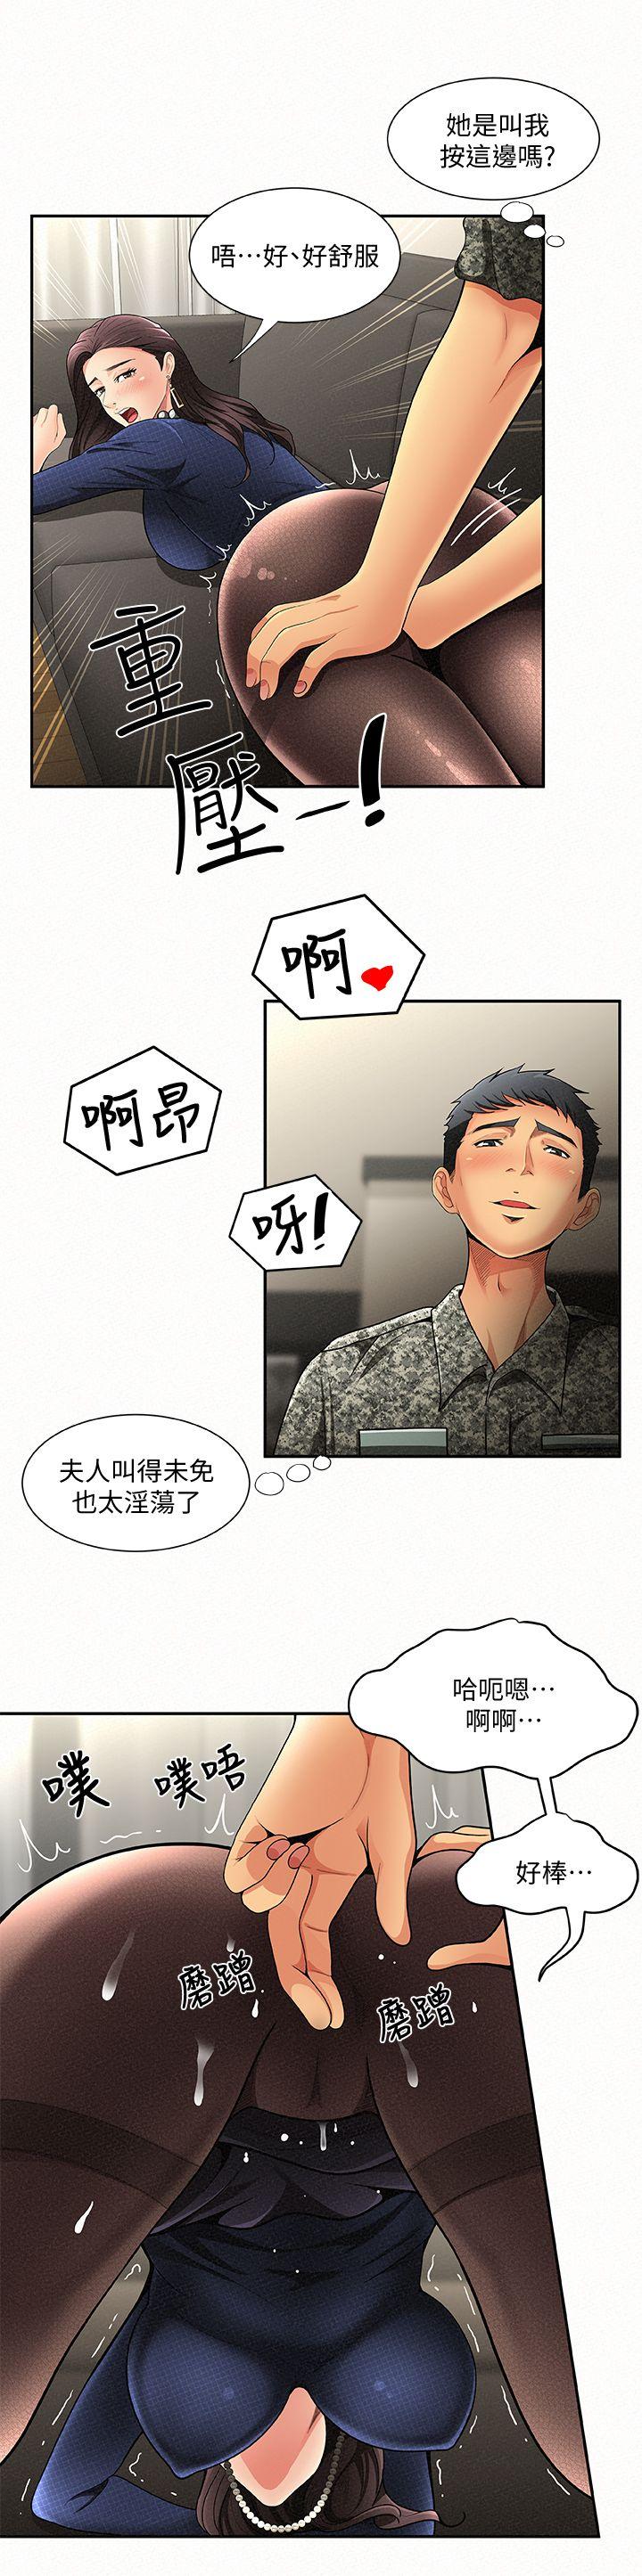 韩国污漫画 報告夫人 第1话-给大头兵的爽缺 41